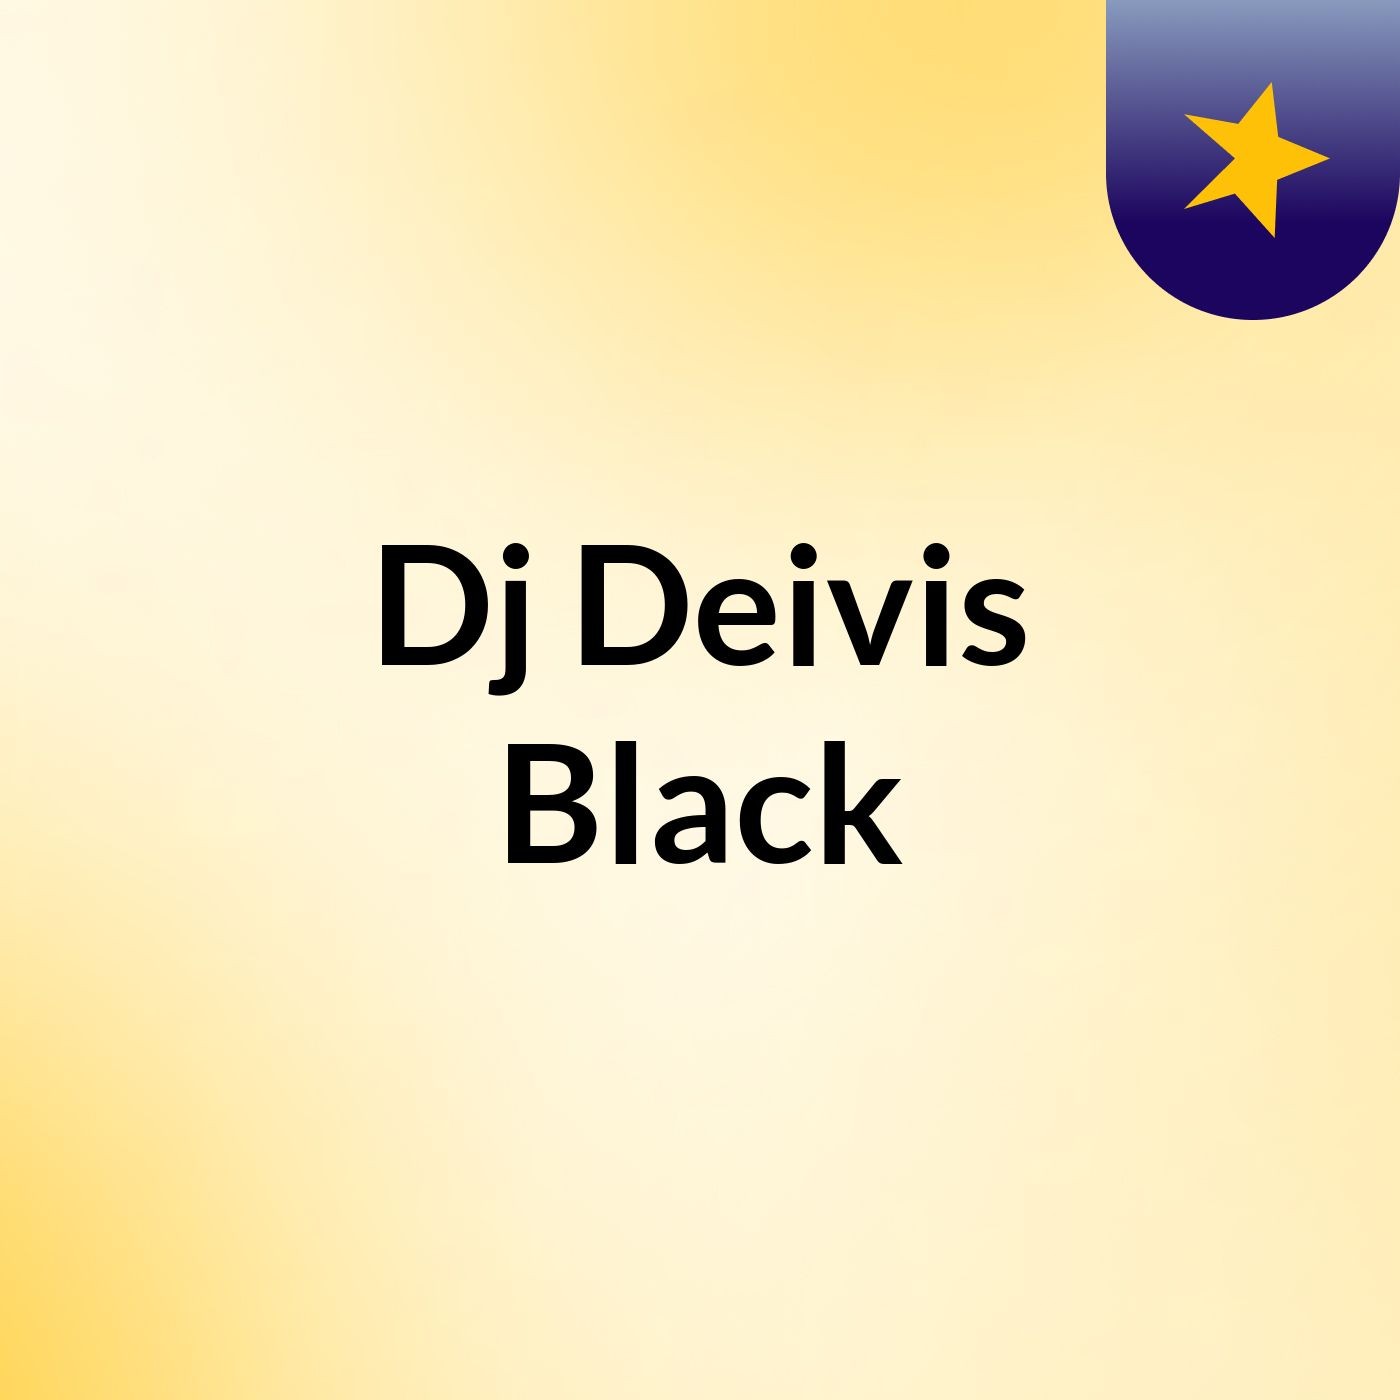 Dj Deivis Black